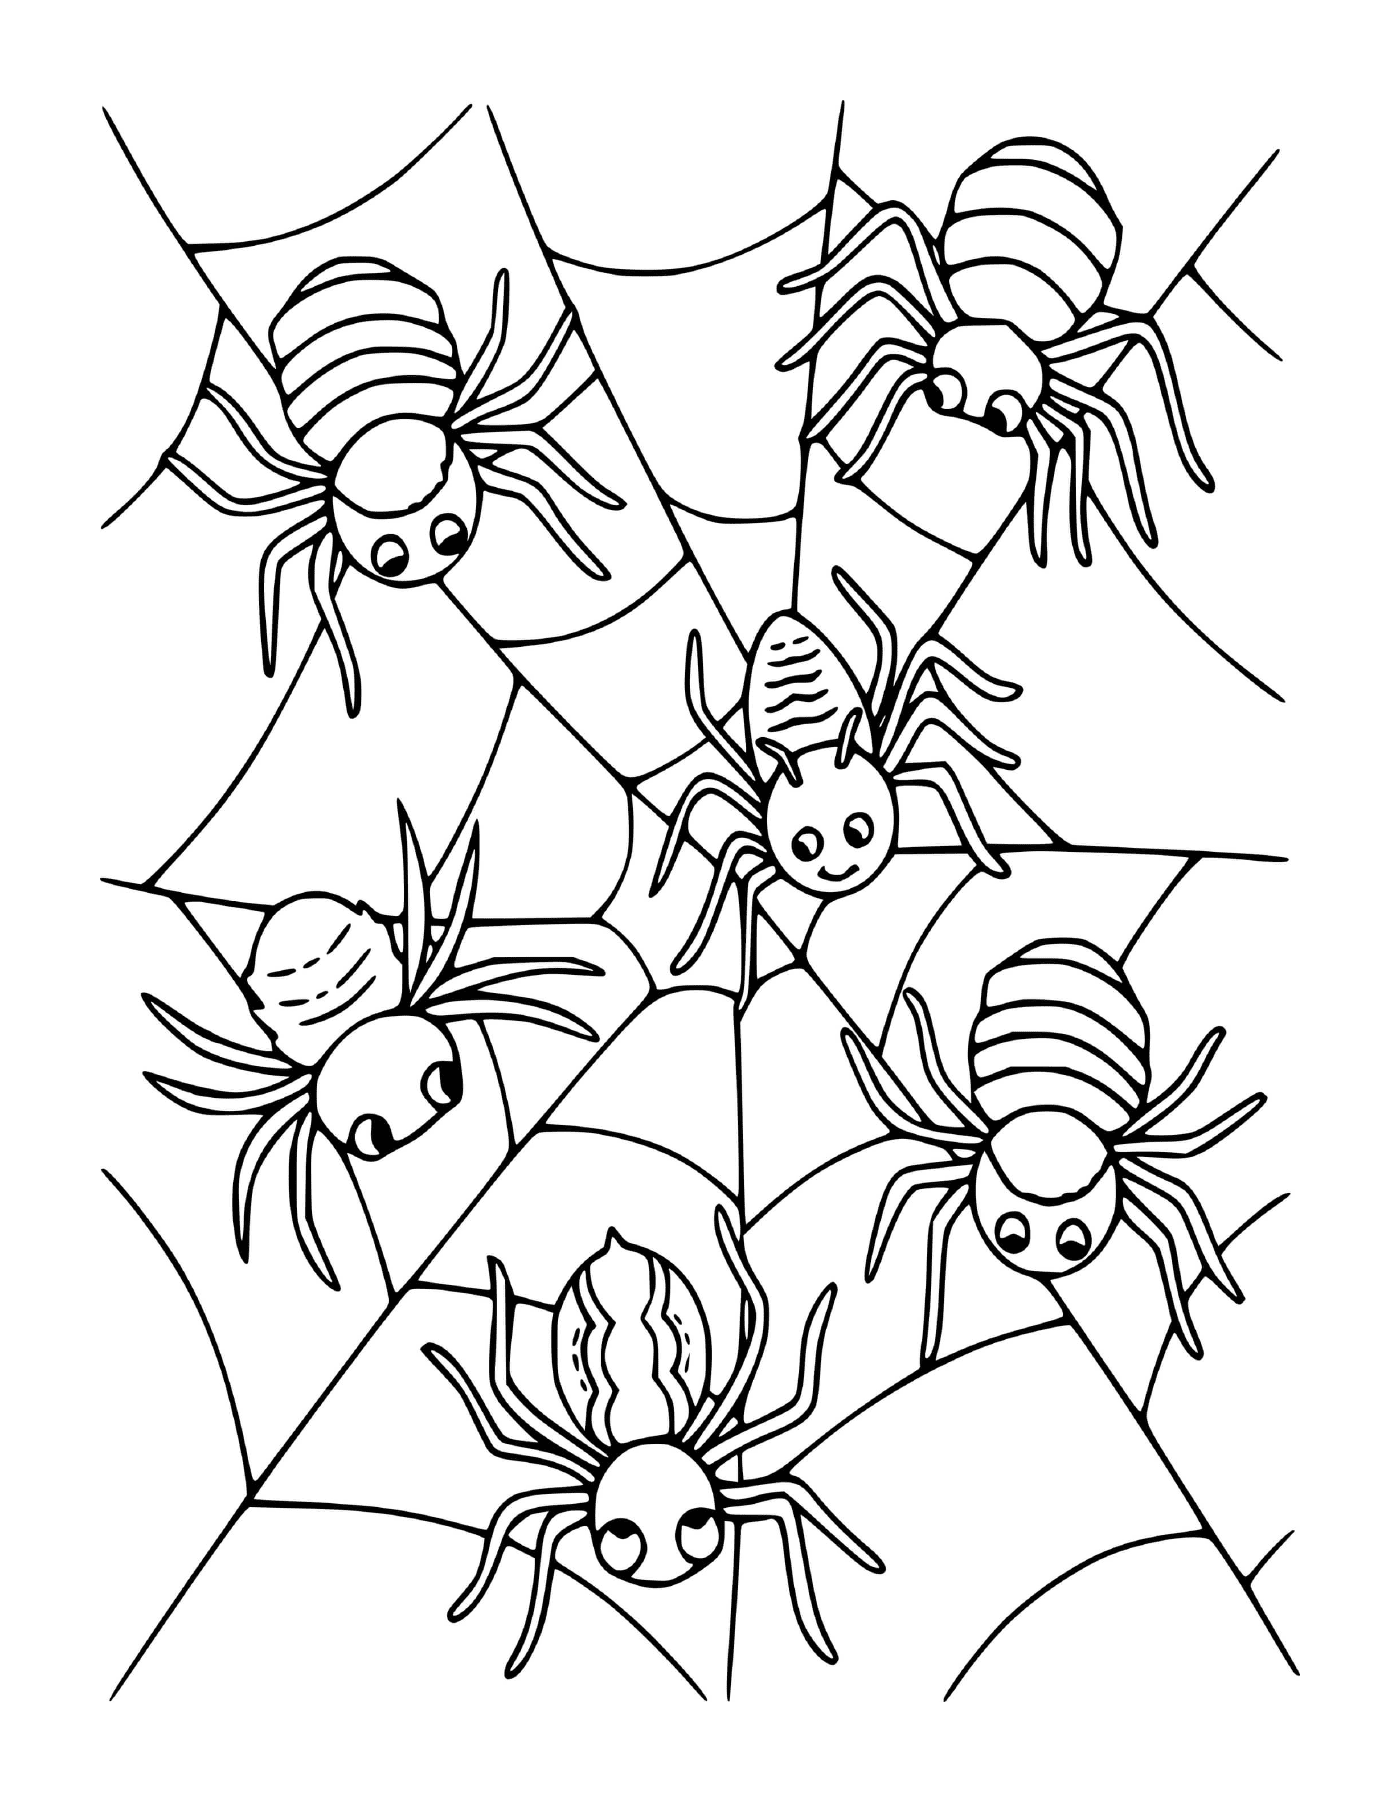   Un groupe de quatre araignées assises sur une toile 